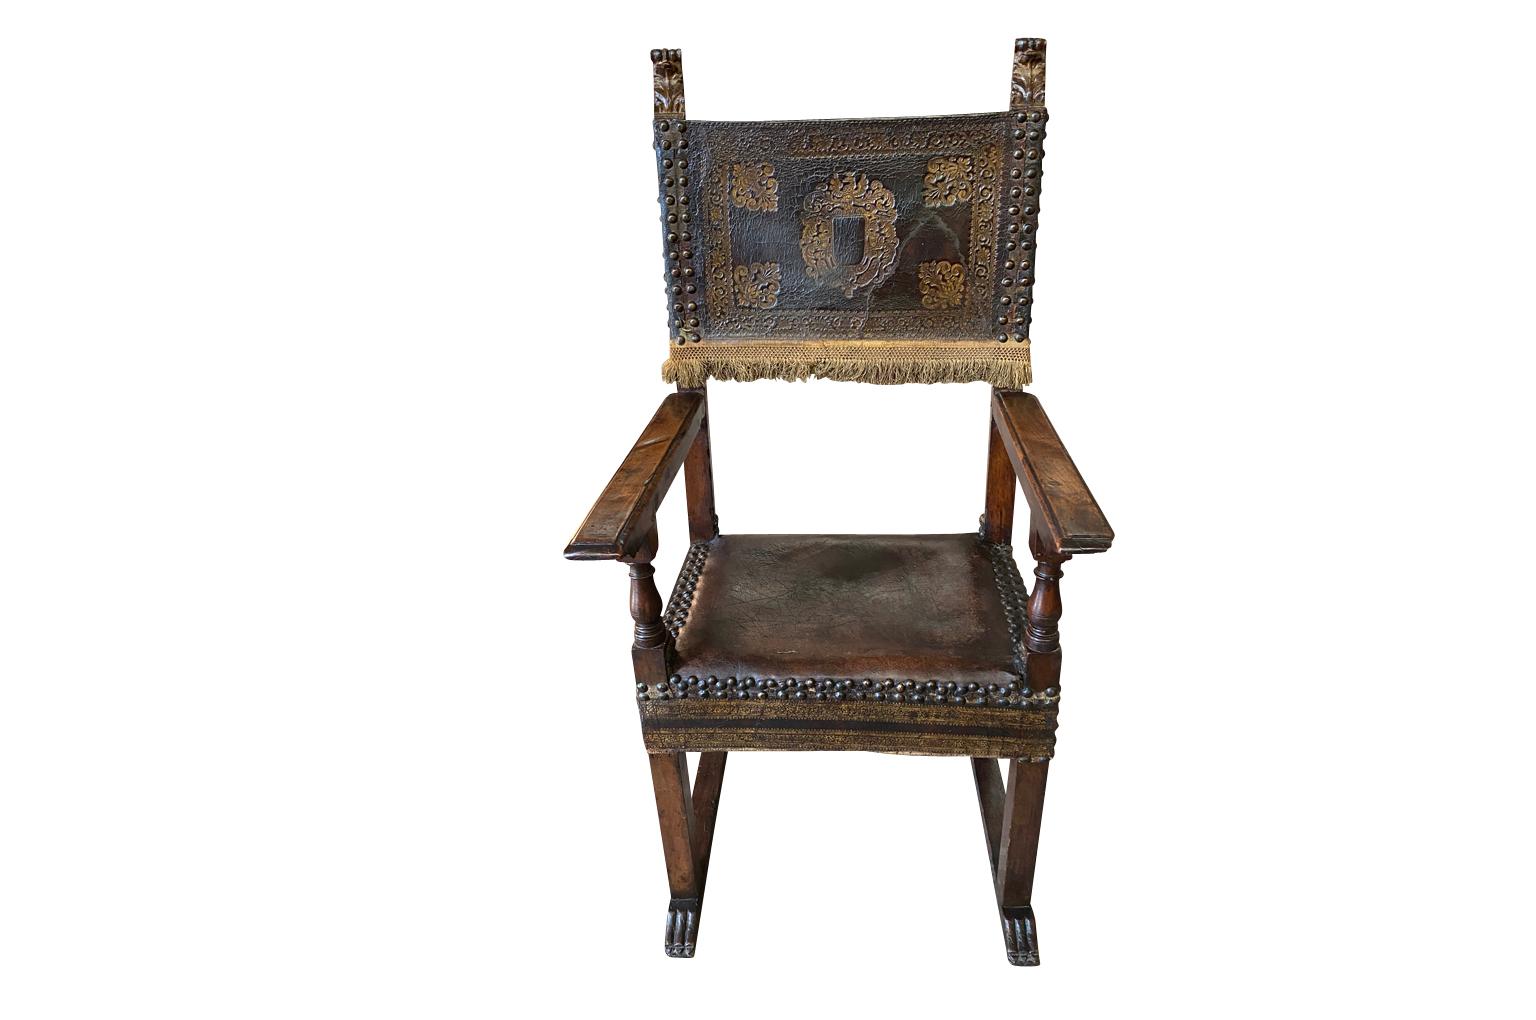 Ein exquisiter Sessel aus der Renaissance aus der Lombardei, Italien.  Wunderschön konstruiert aus Nussbaumholz und geprägtem Leder, akzentuiert mit Goldvergoldung und hübschen Nagelköpfen.  Sehr robust mit schöner Patina.  